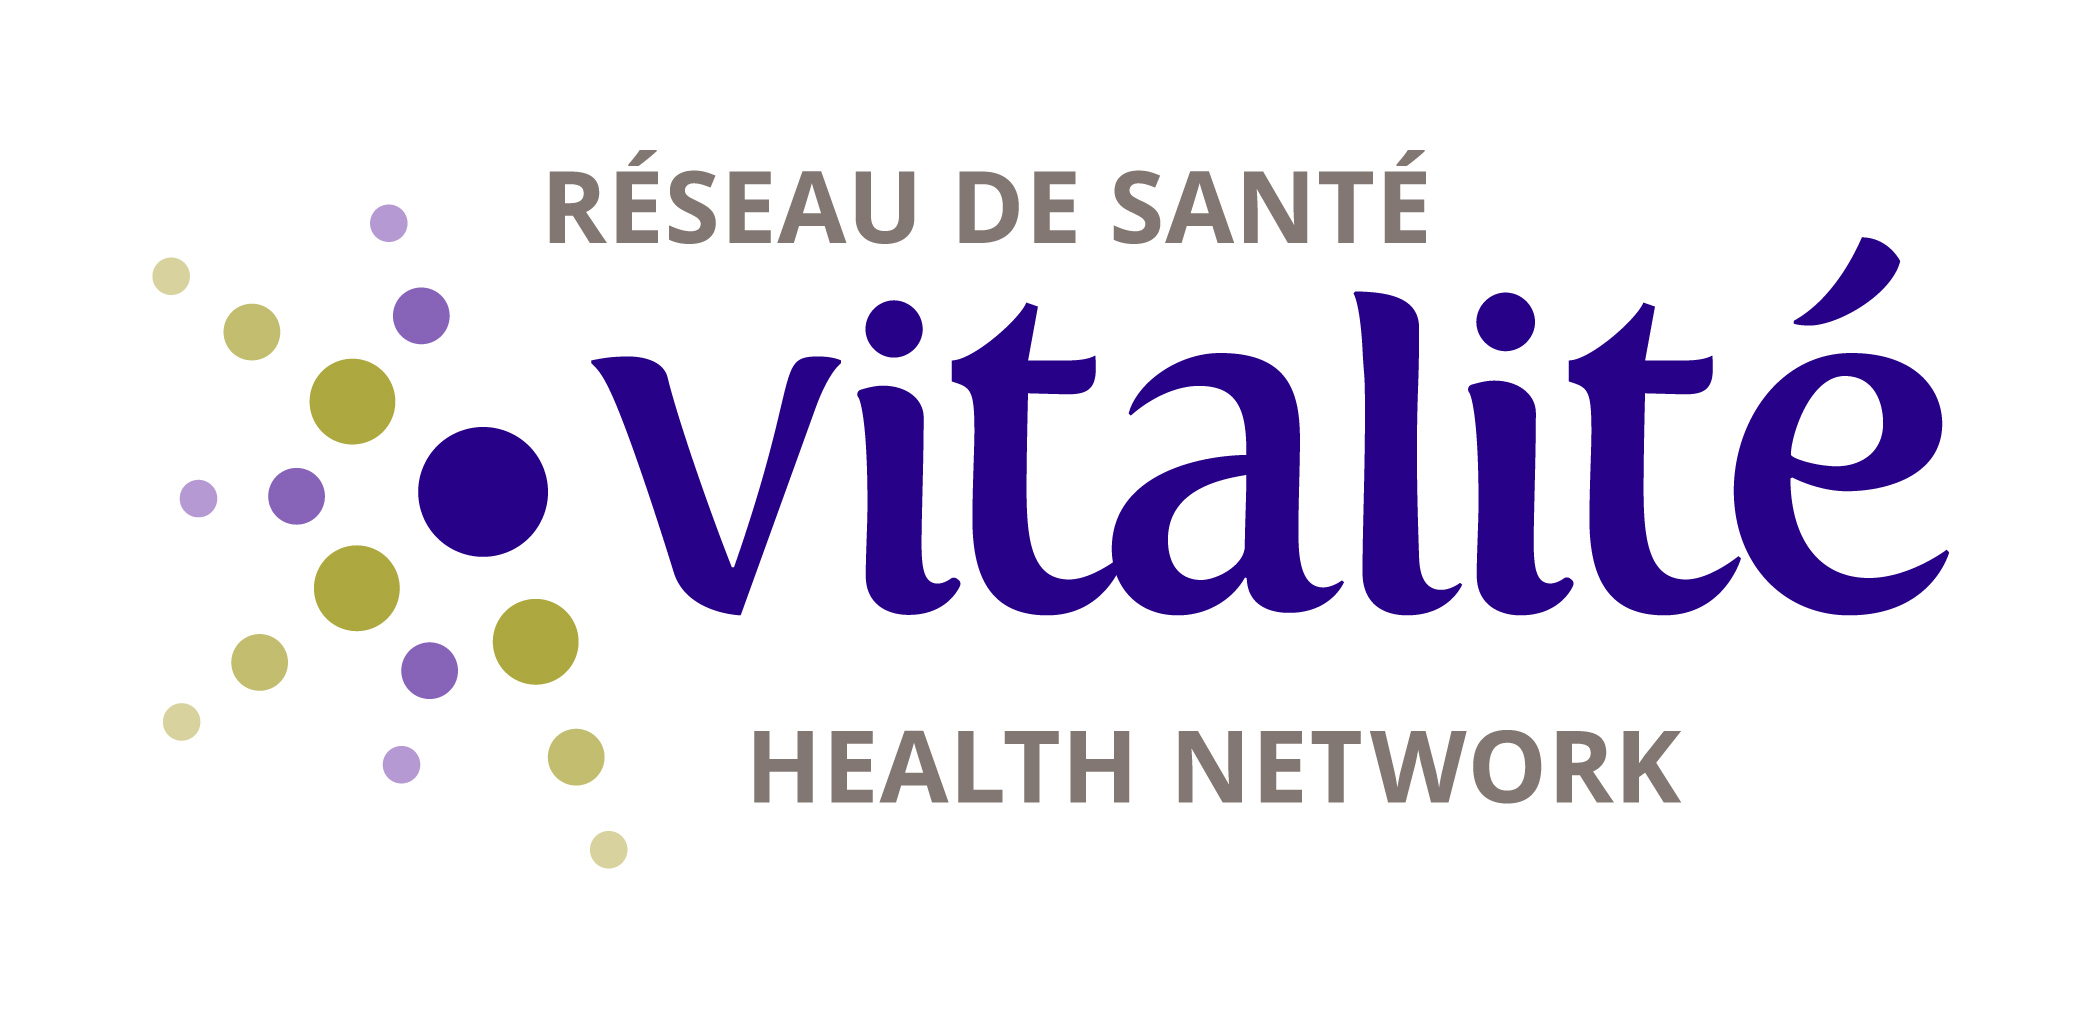 Réseau de santé Vitalité Health Network